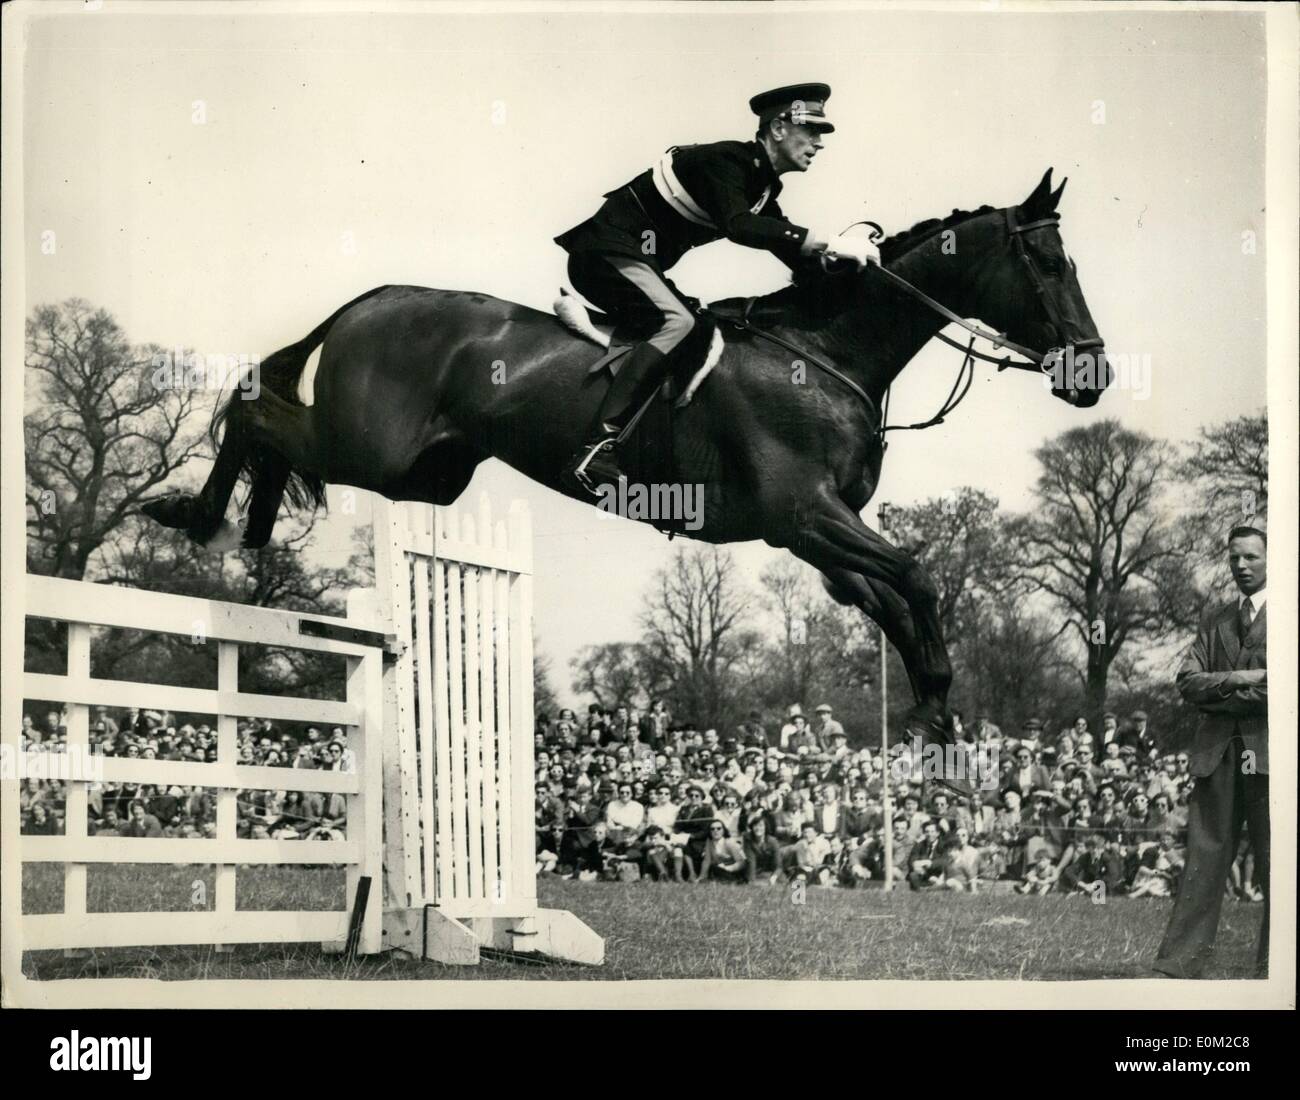 04. April 1953 - Internationale Gerichtsprozesse in Mington. Der britische Konkurrent gewinnt die olympischen Prüfungen. Foto zeigt ''Starlight XV'' springt mit seinem Reiter Major L. Br M.G. in die olympischen Pferdespiele - während der Internationalen Pferdeverwerferungen, die heute von der Königin H.M. bei Dminton beobachtet wurden. Stockfoto